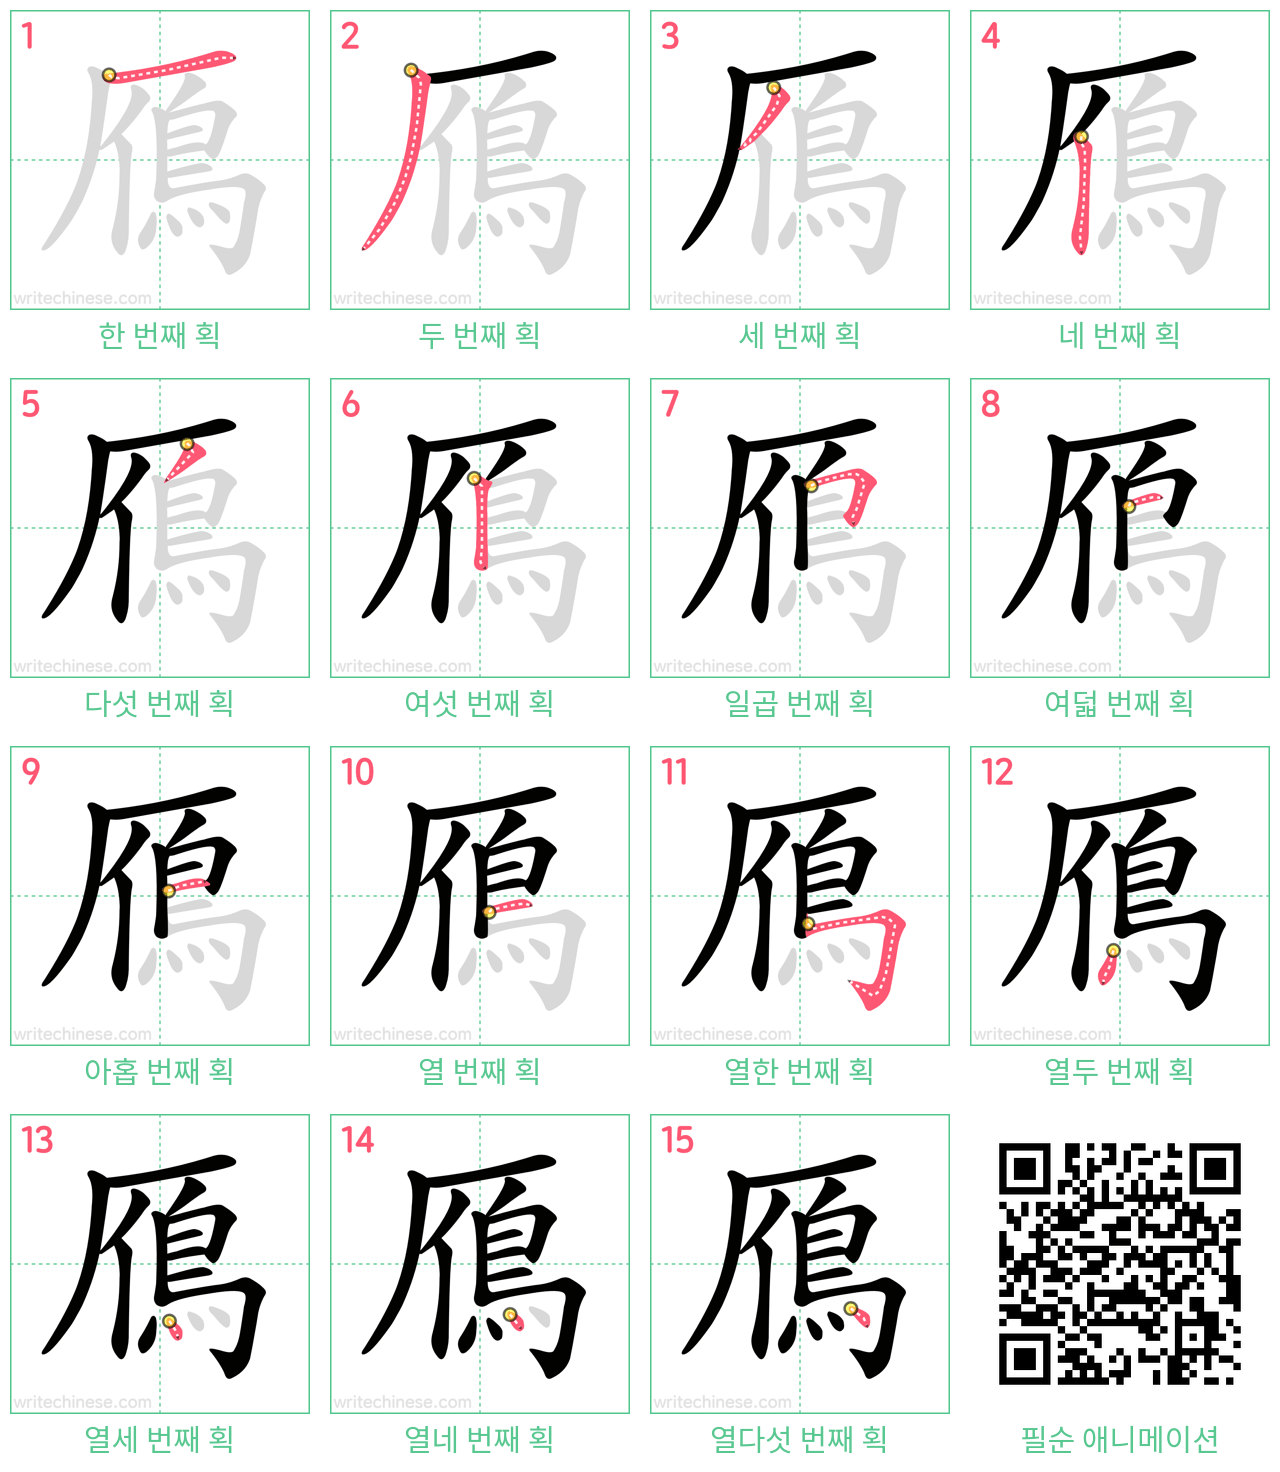 鴈 step-by-step stroke order diagrams